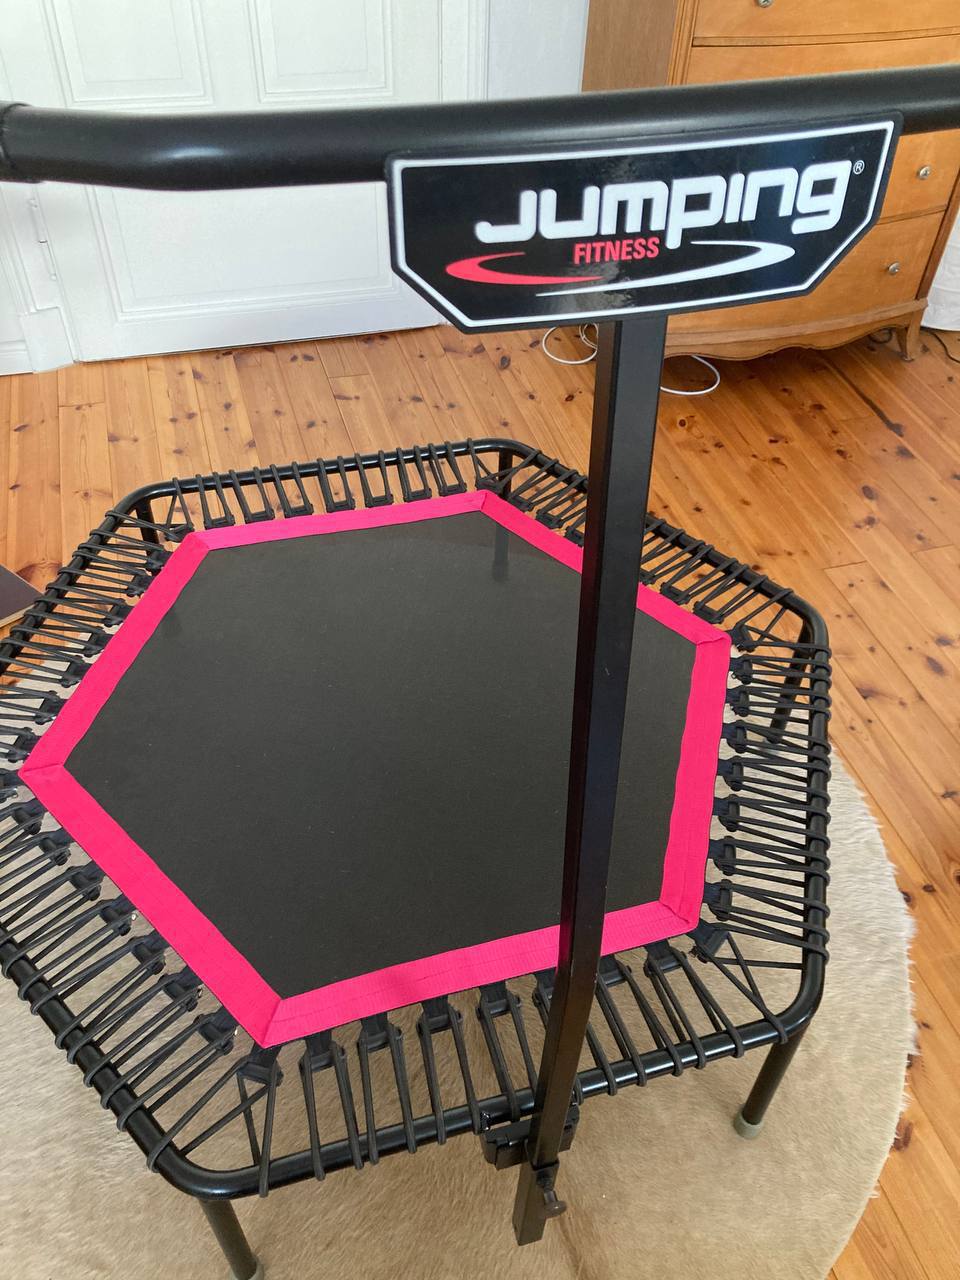 Profi-Fitness-Trampolin von Jumping Fitness